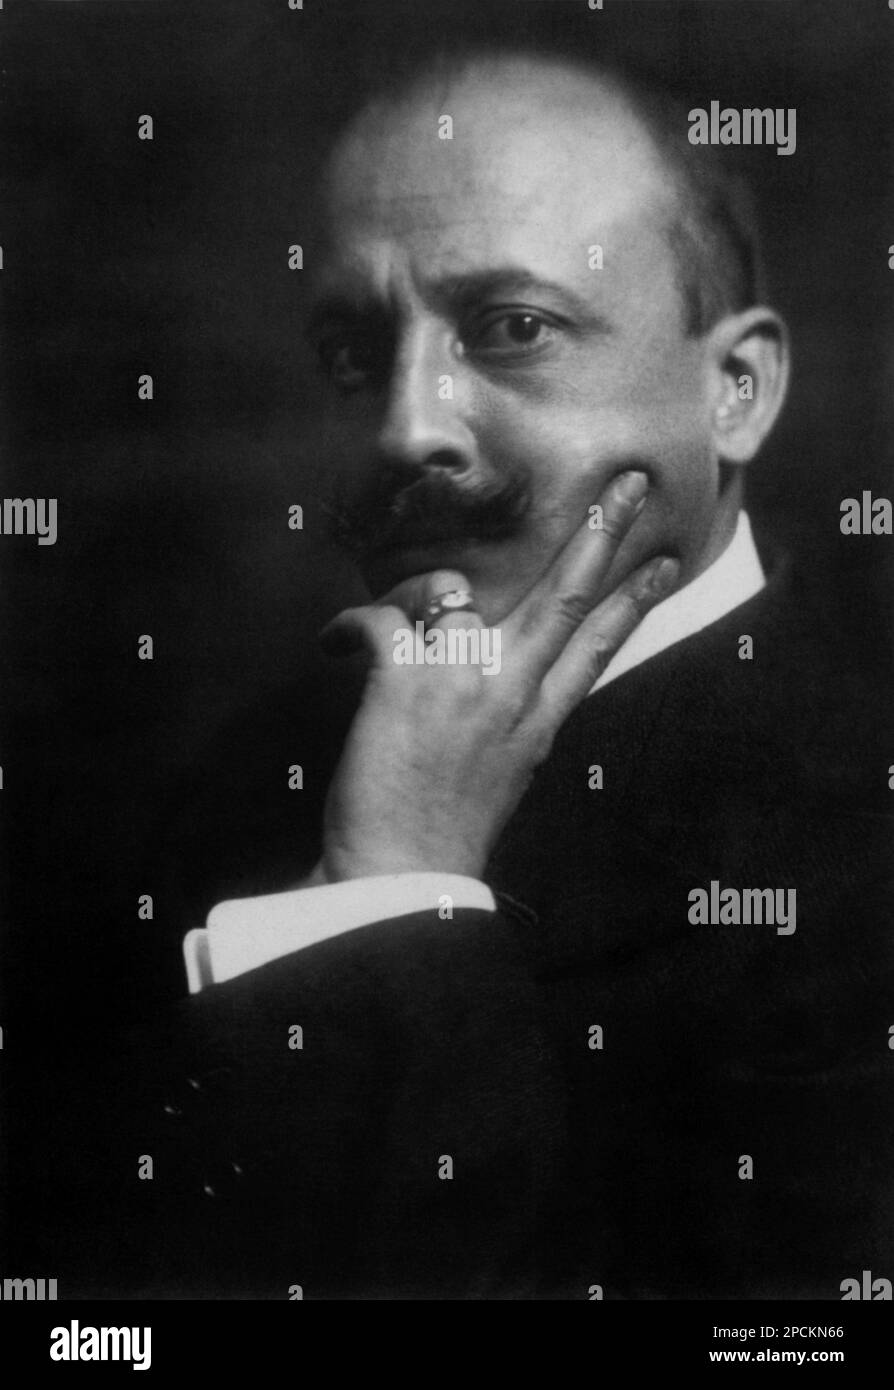 1913 , Milano , ITALY : The italian Avantgarde artist FILIPPO TOMMASO MARINETTI ( 1876 - 1944 ), photo by Emilio Sommariva  - FUTURISM - FUTURISTA - FUTURIST -  ARTE  - ARTS - TEATRO - THEATER - AVANGUARDIA  - portrait - ritratto - baffi - moustache - anello - ring - thinker - pensatore - LETTERATURA - LITERATURE  --- Archivio GBB Stock Photo